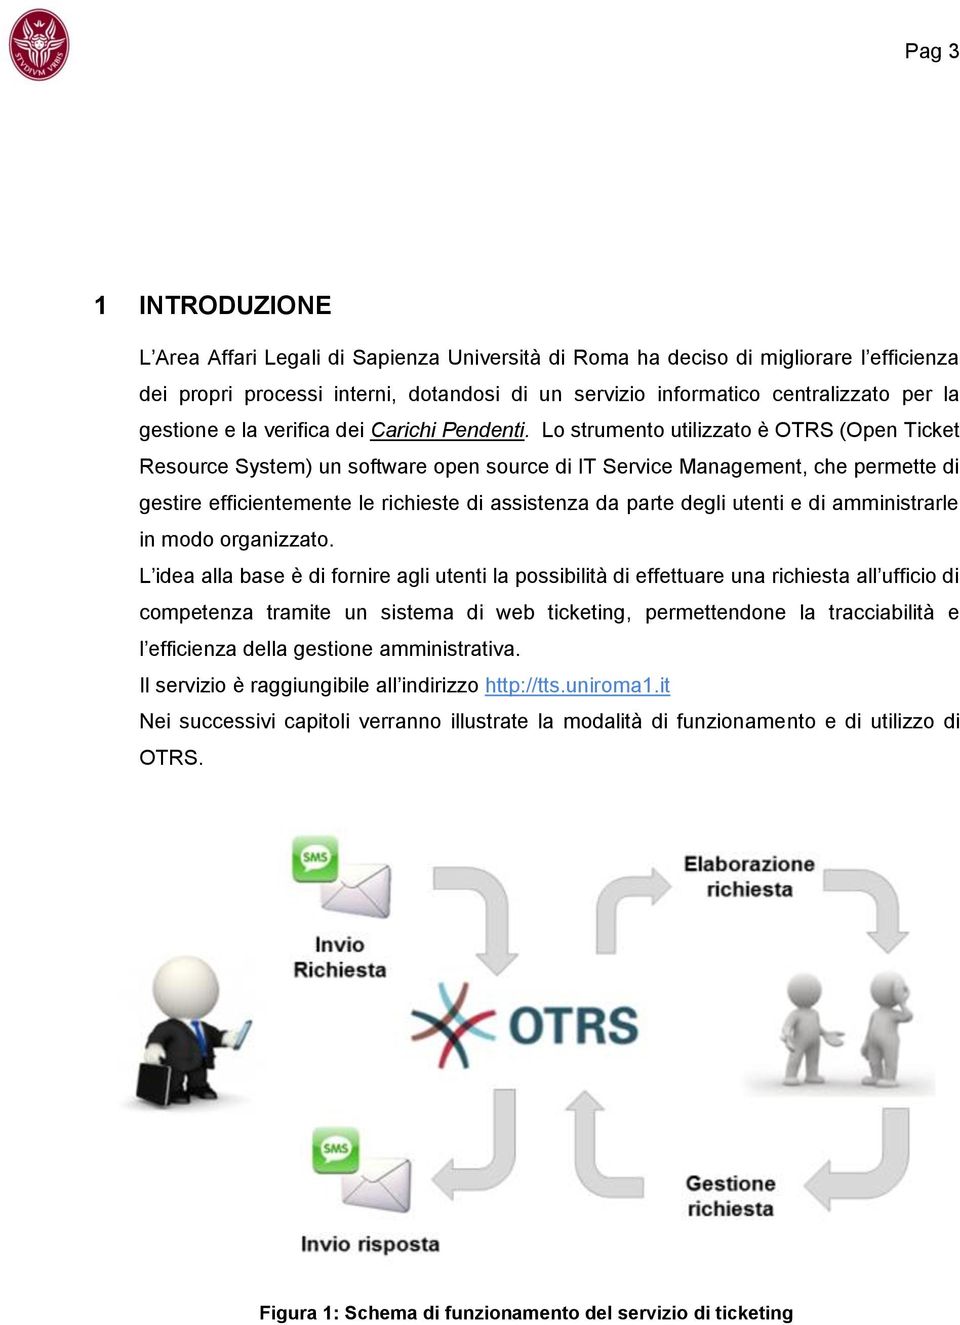 Lo strumento utilizzato è OTRS (Open Ticket Resource System) un software open source di IT Service Management, che permette di gestire efficientemente le richieste di assistenza da parte degli utenti